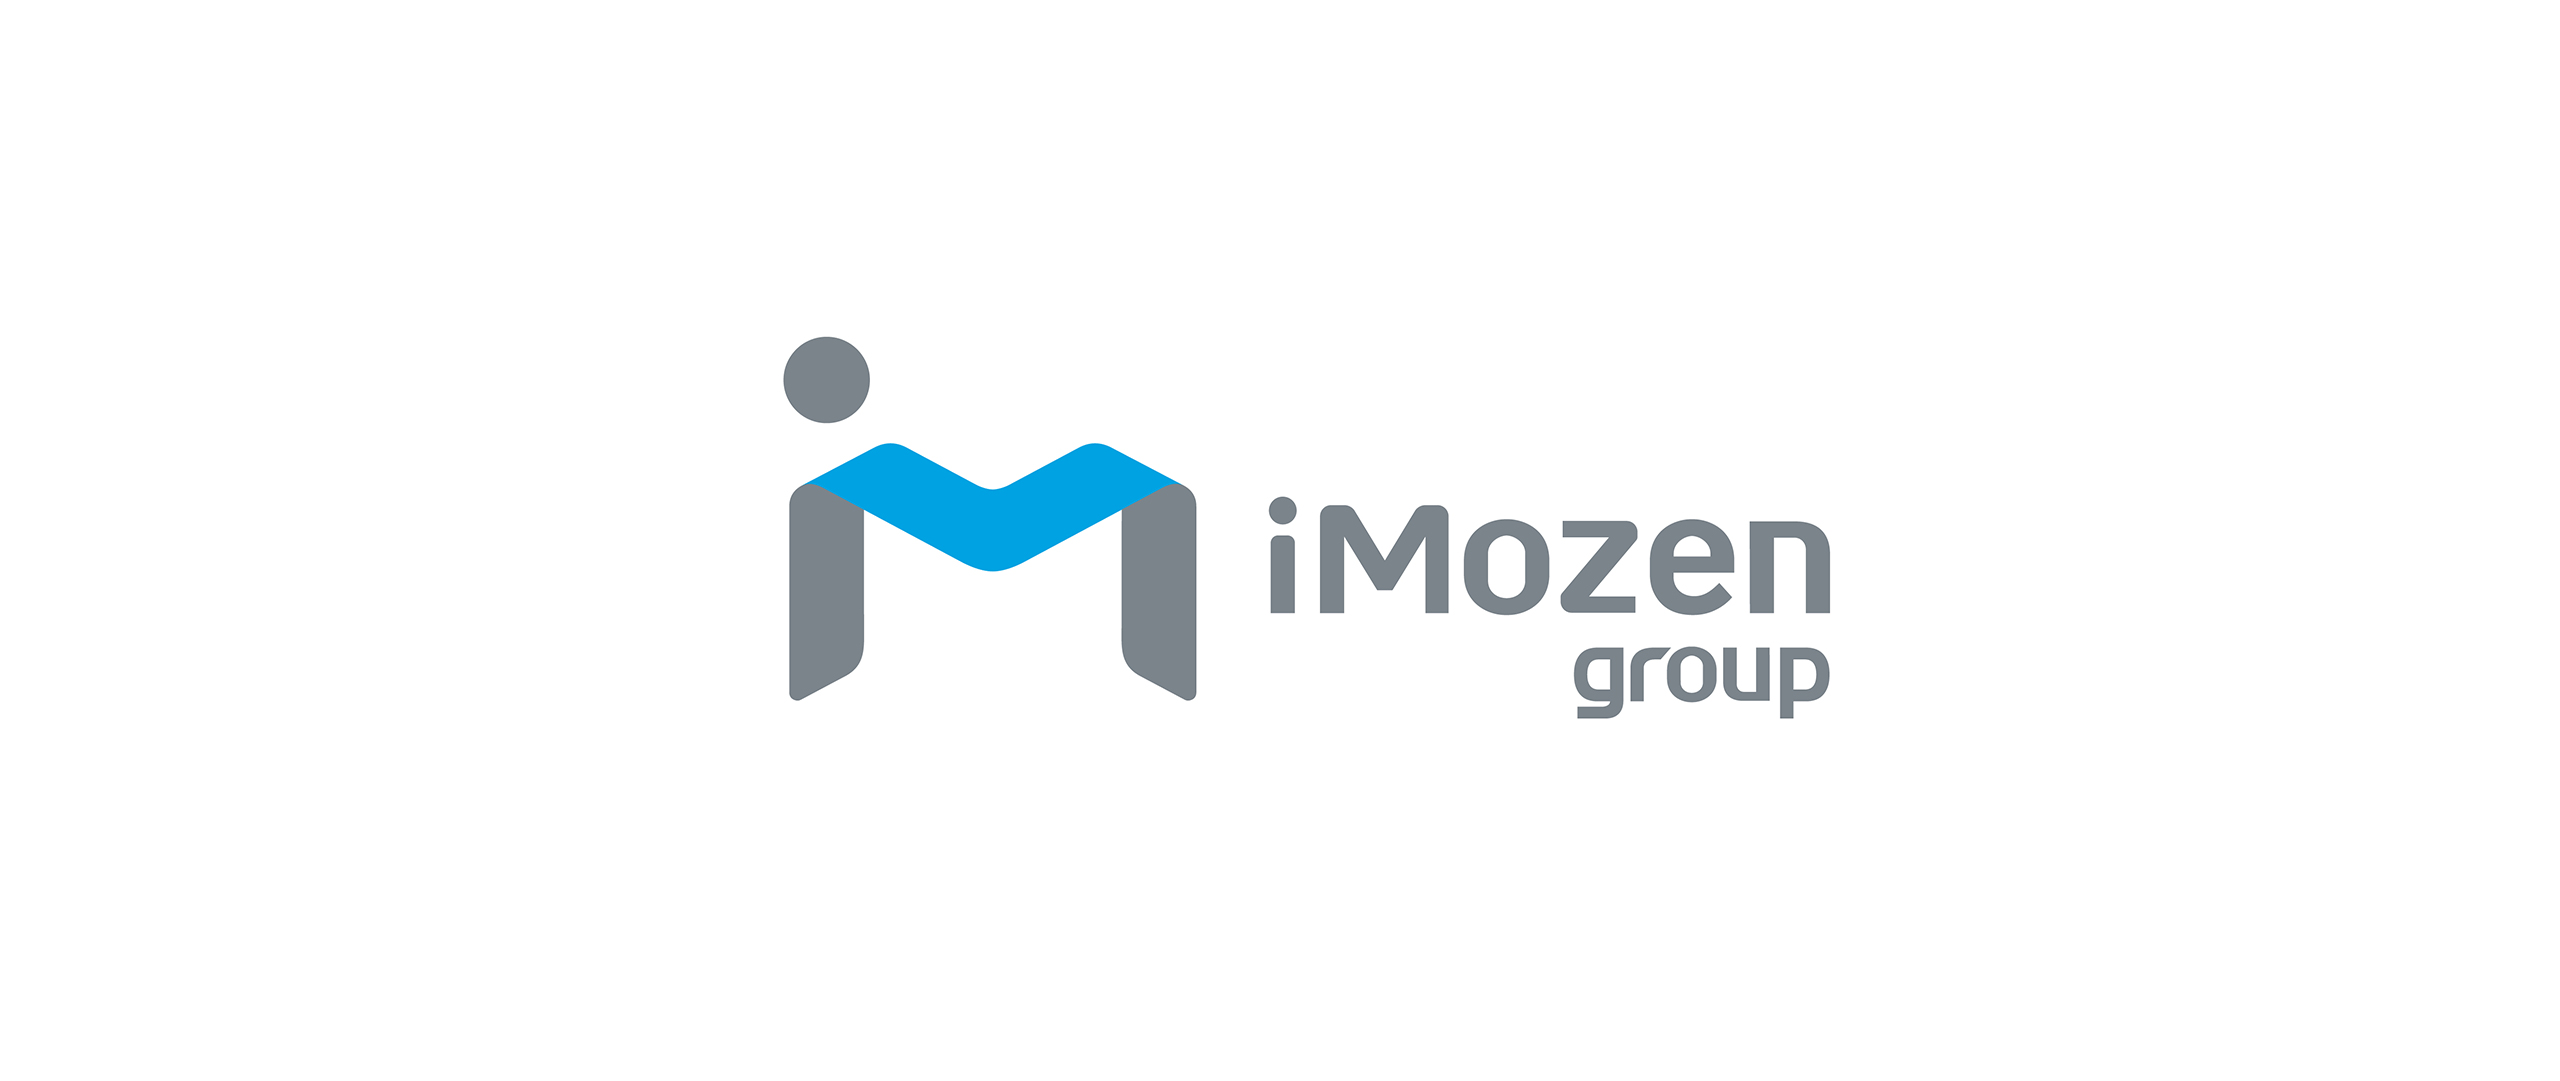 iMozen-group